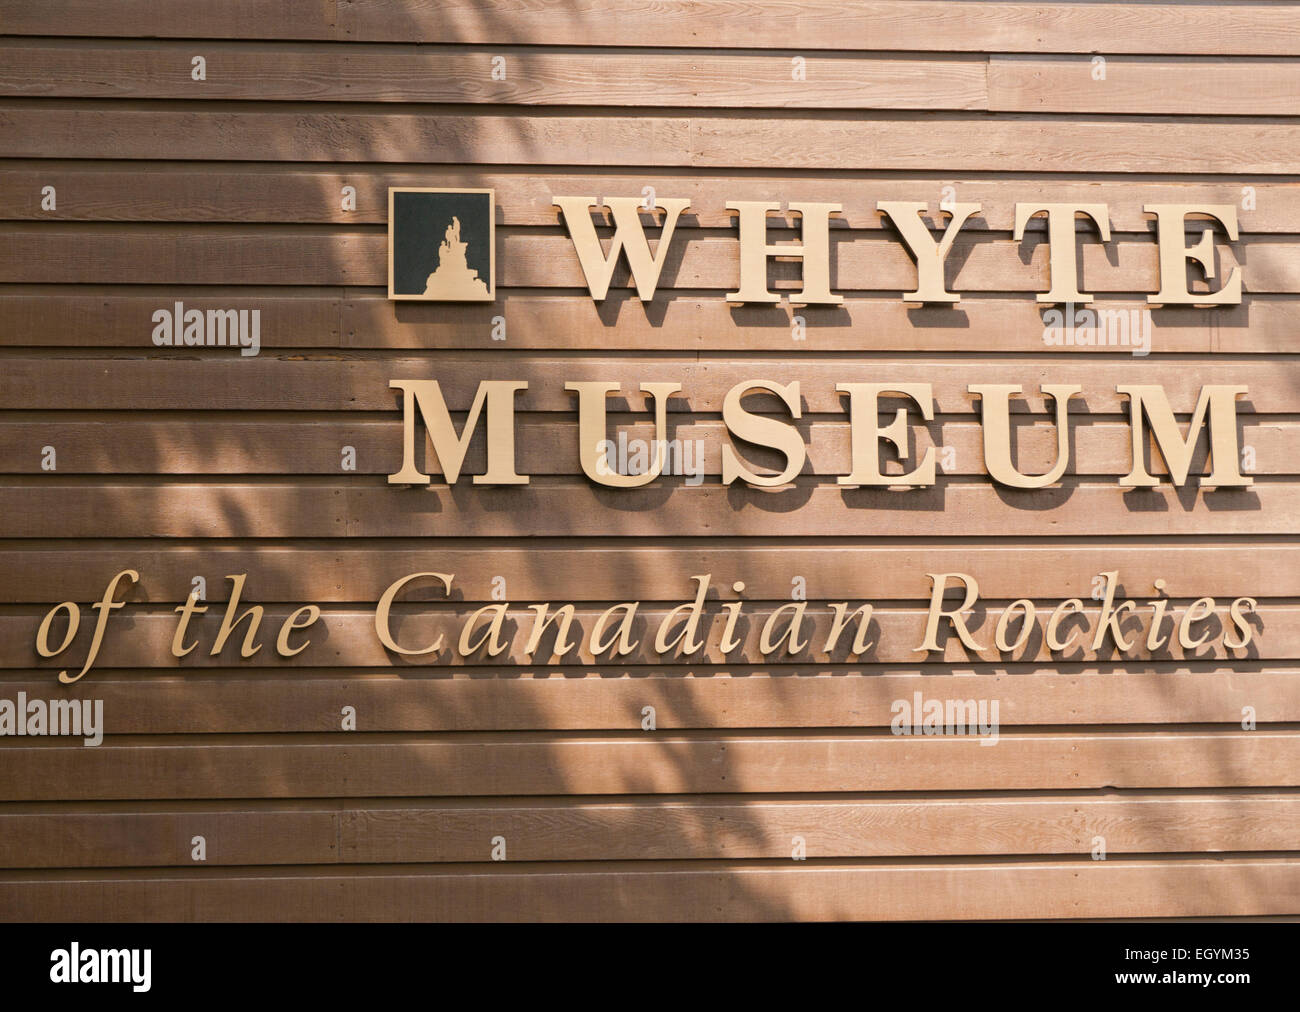 Whyte Museum der kanadischen Rockies in Banff Alberta, Kanada Stockfoto